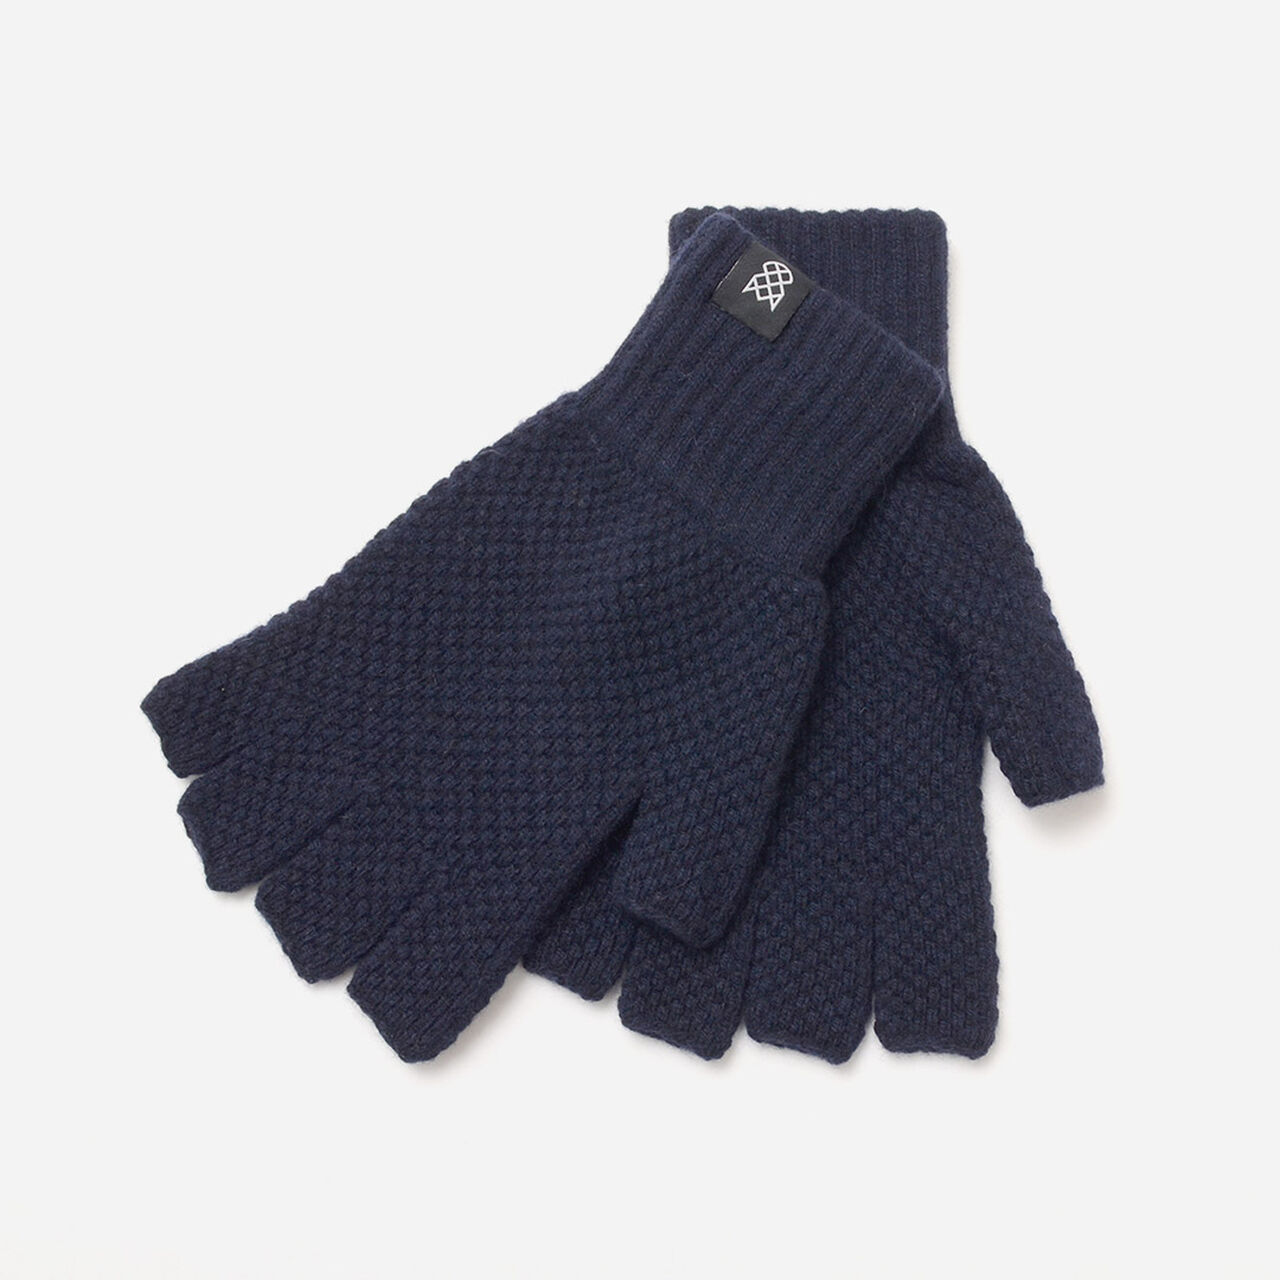 Special Order Tuck Stitch Half Finger Knit Glove,Navy, large image number 0